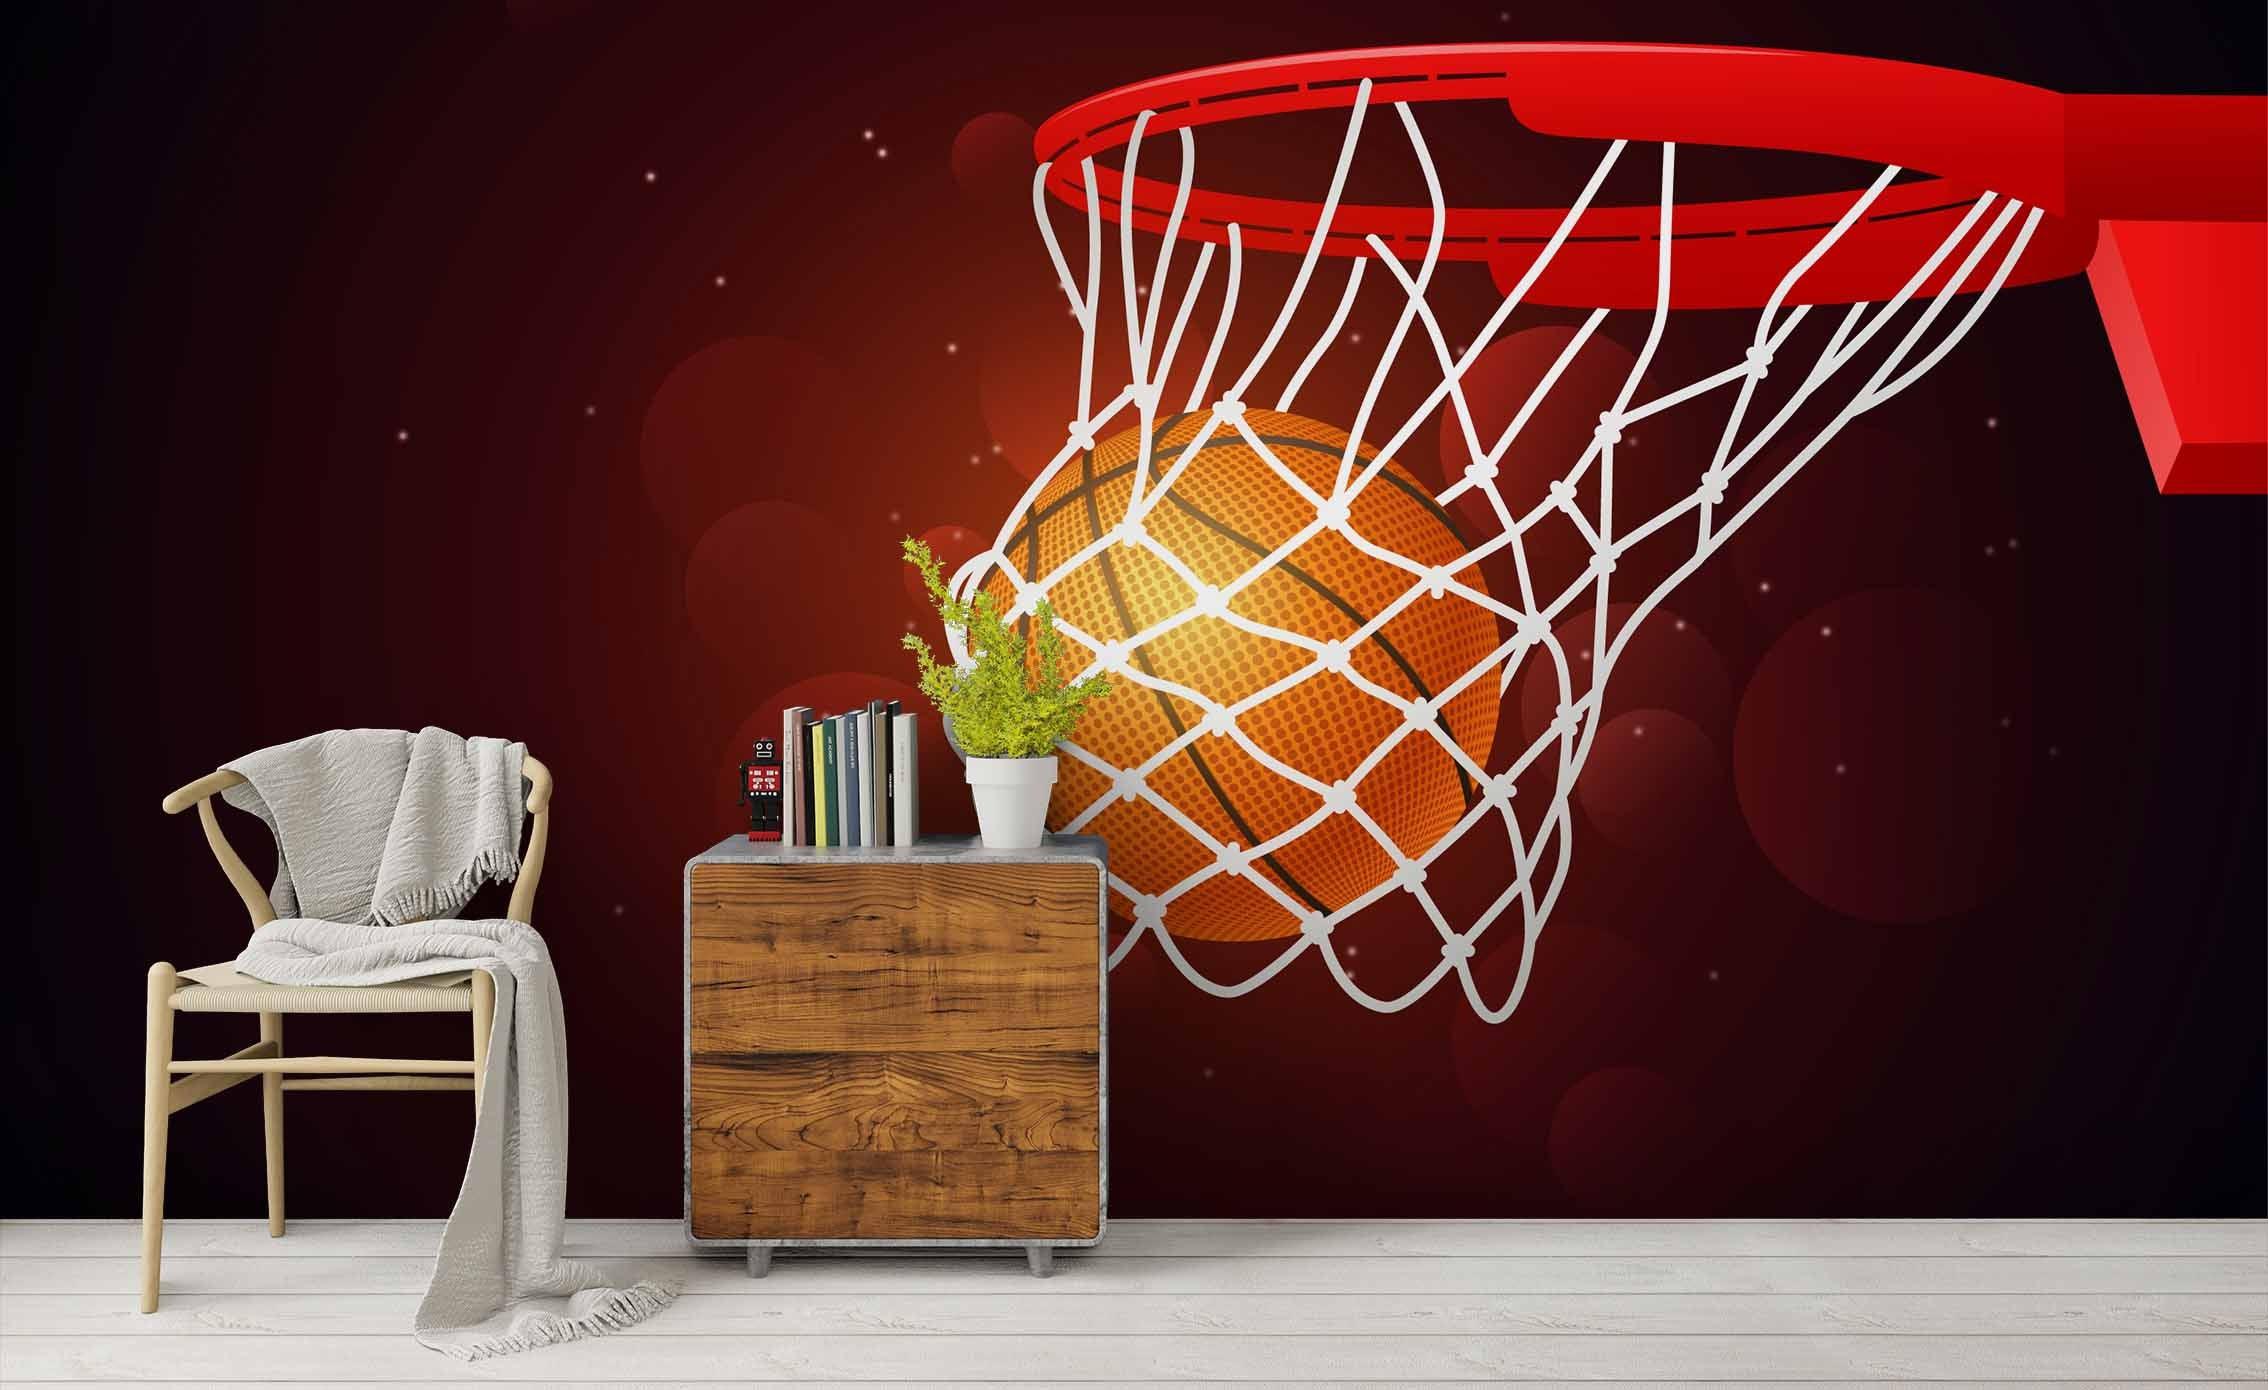 3D Basketball Pattern Wall Mural Wallpaper 33- Jess Art Decoration